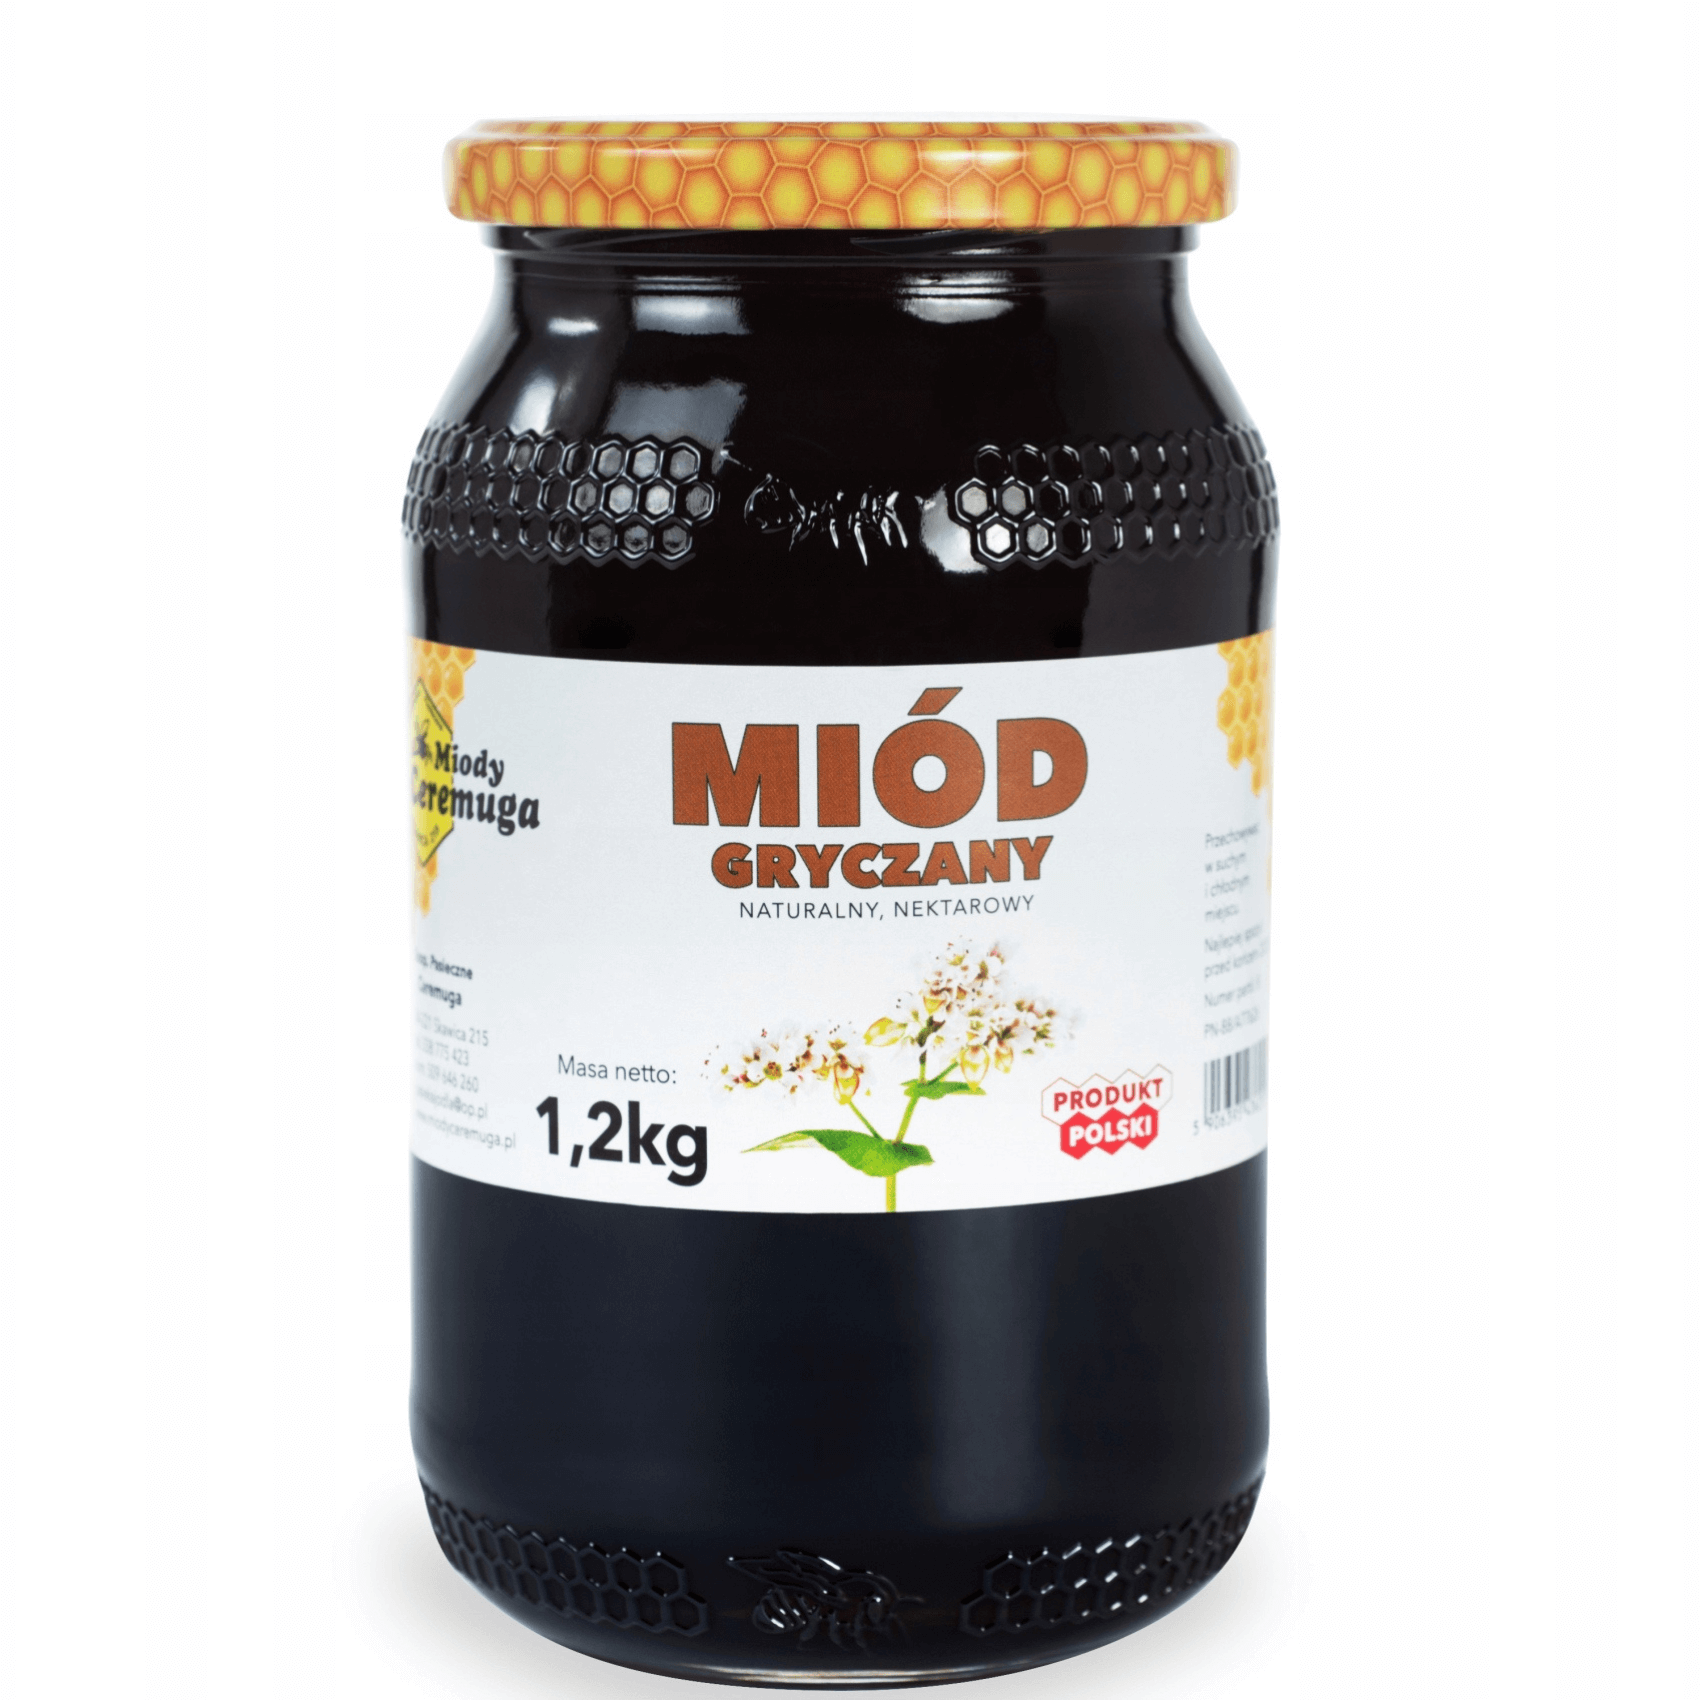 Miód gryczany 1,2 kg - Miody Ceremuga